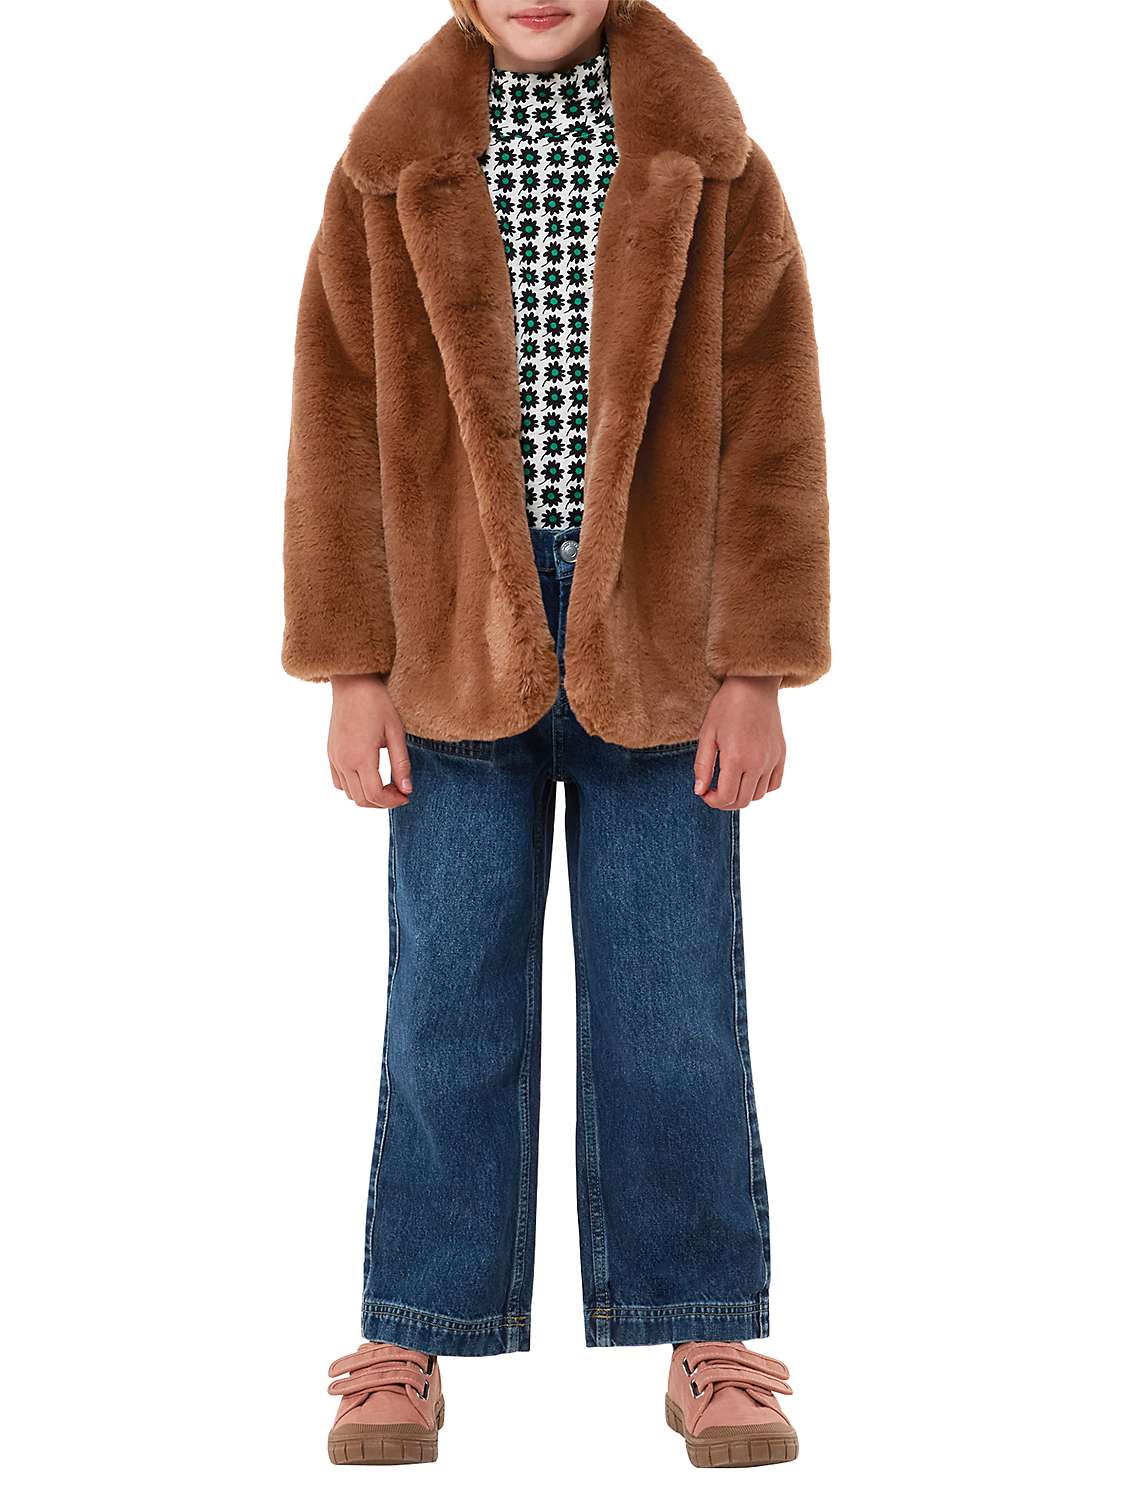 Buy Whistles Kids' Faux Fur Teddy Coat, Brown Online at johnlewis.com